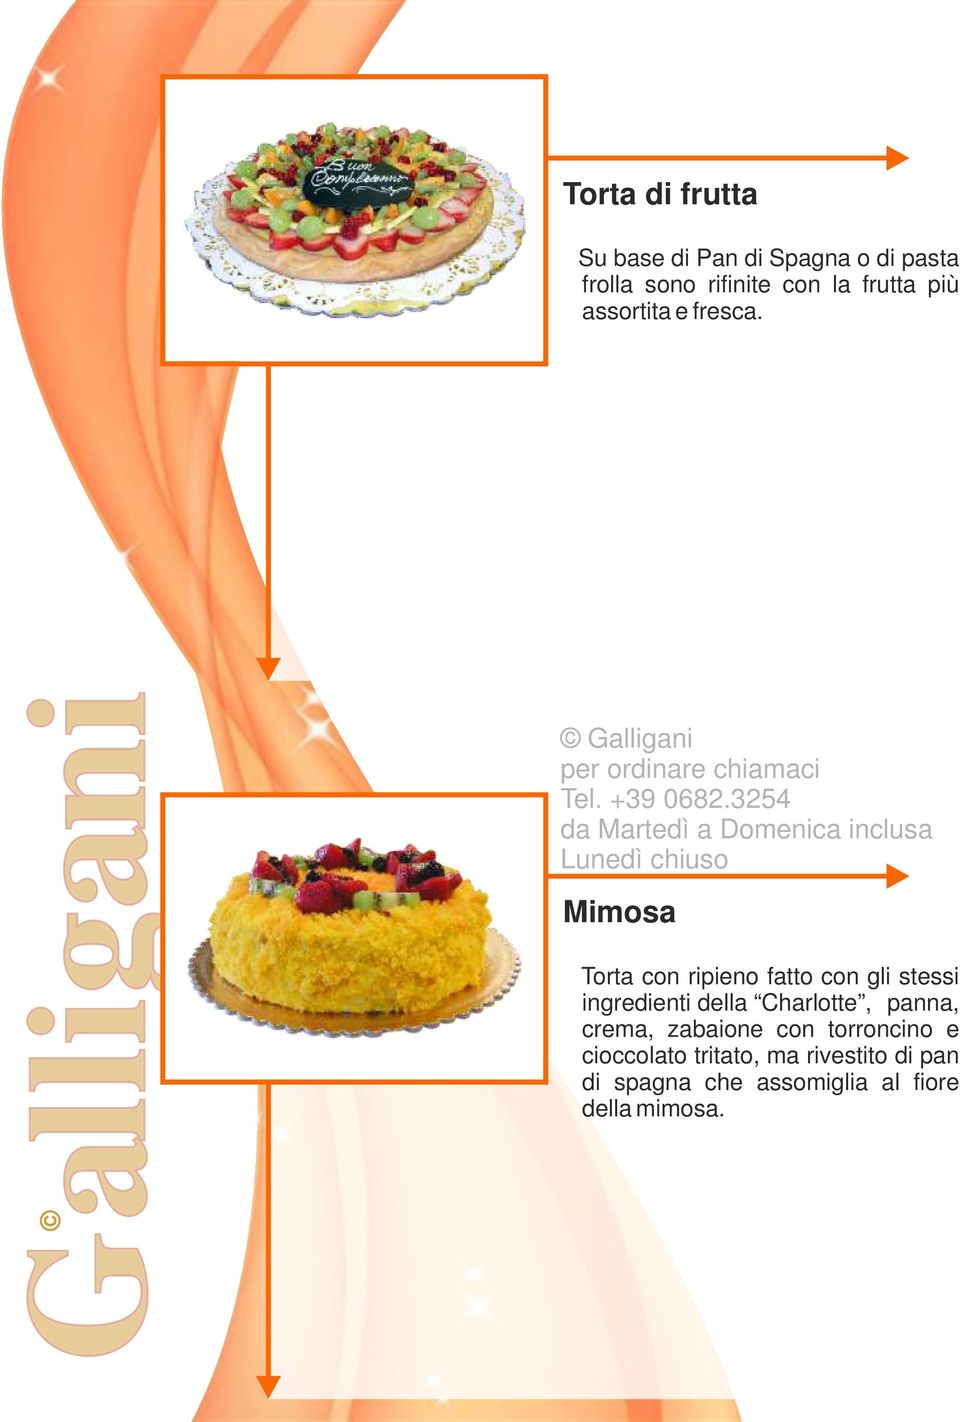 Mimosa Torta con ripieno fatto con gli stessi ingredienti della Charlotte,